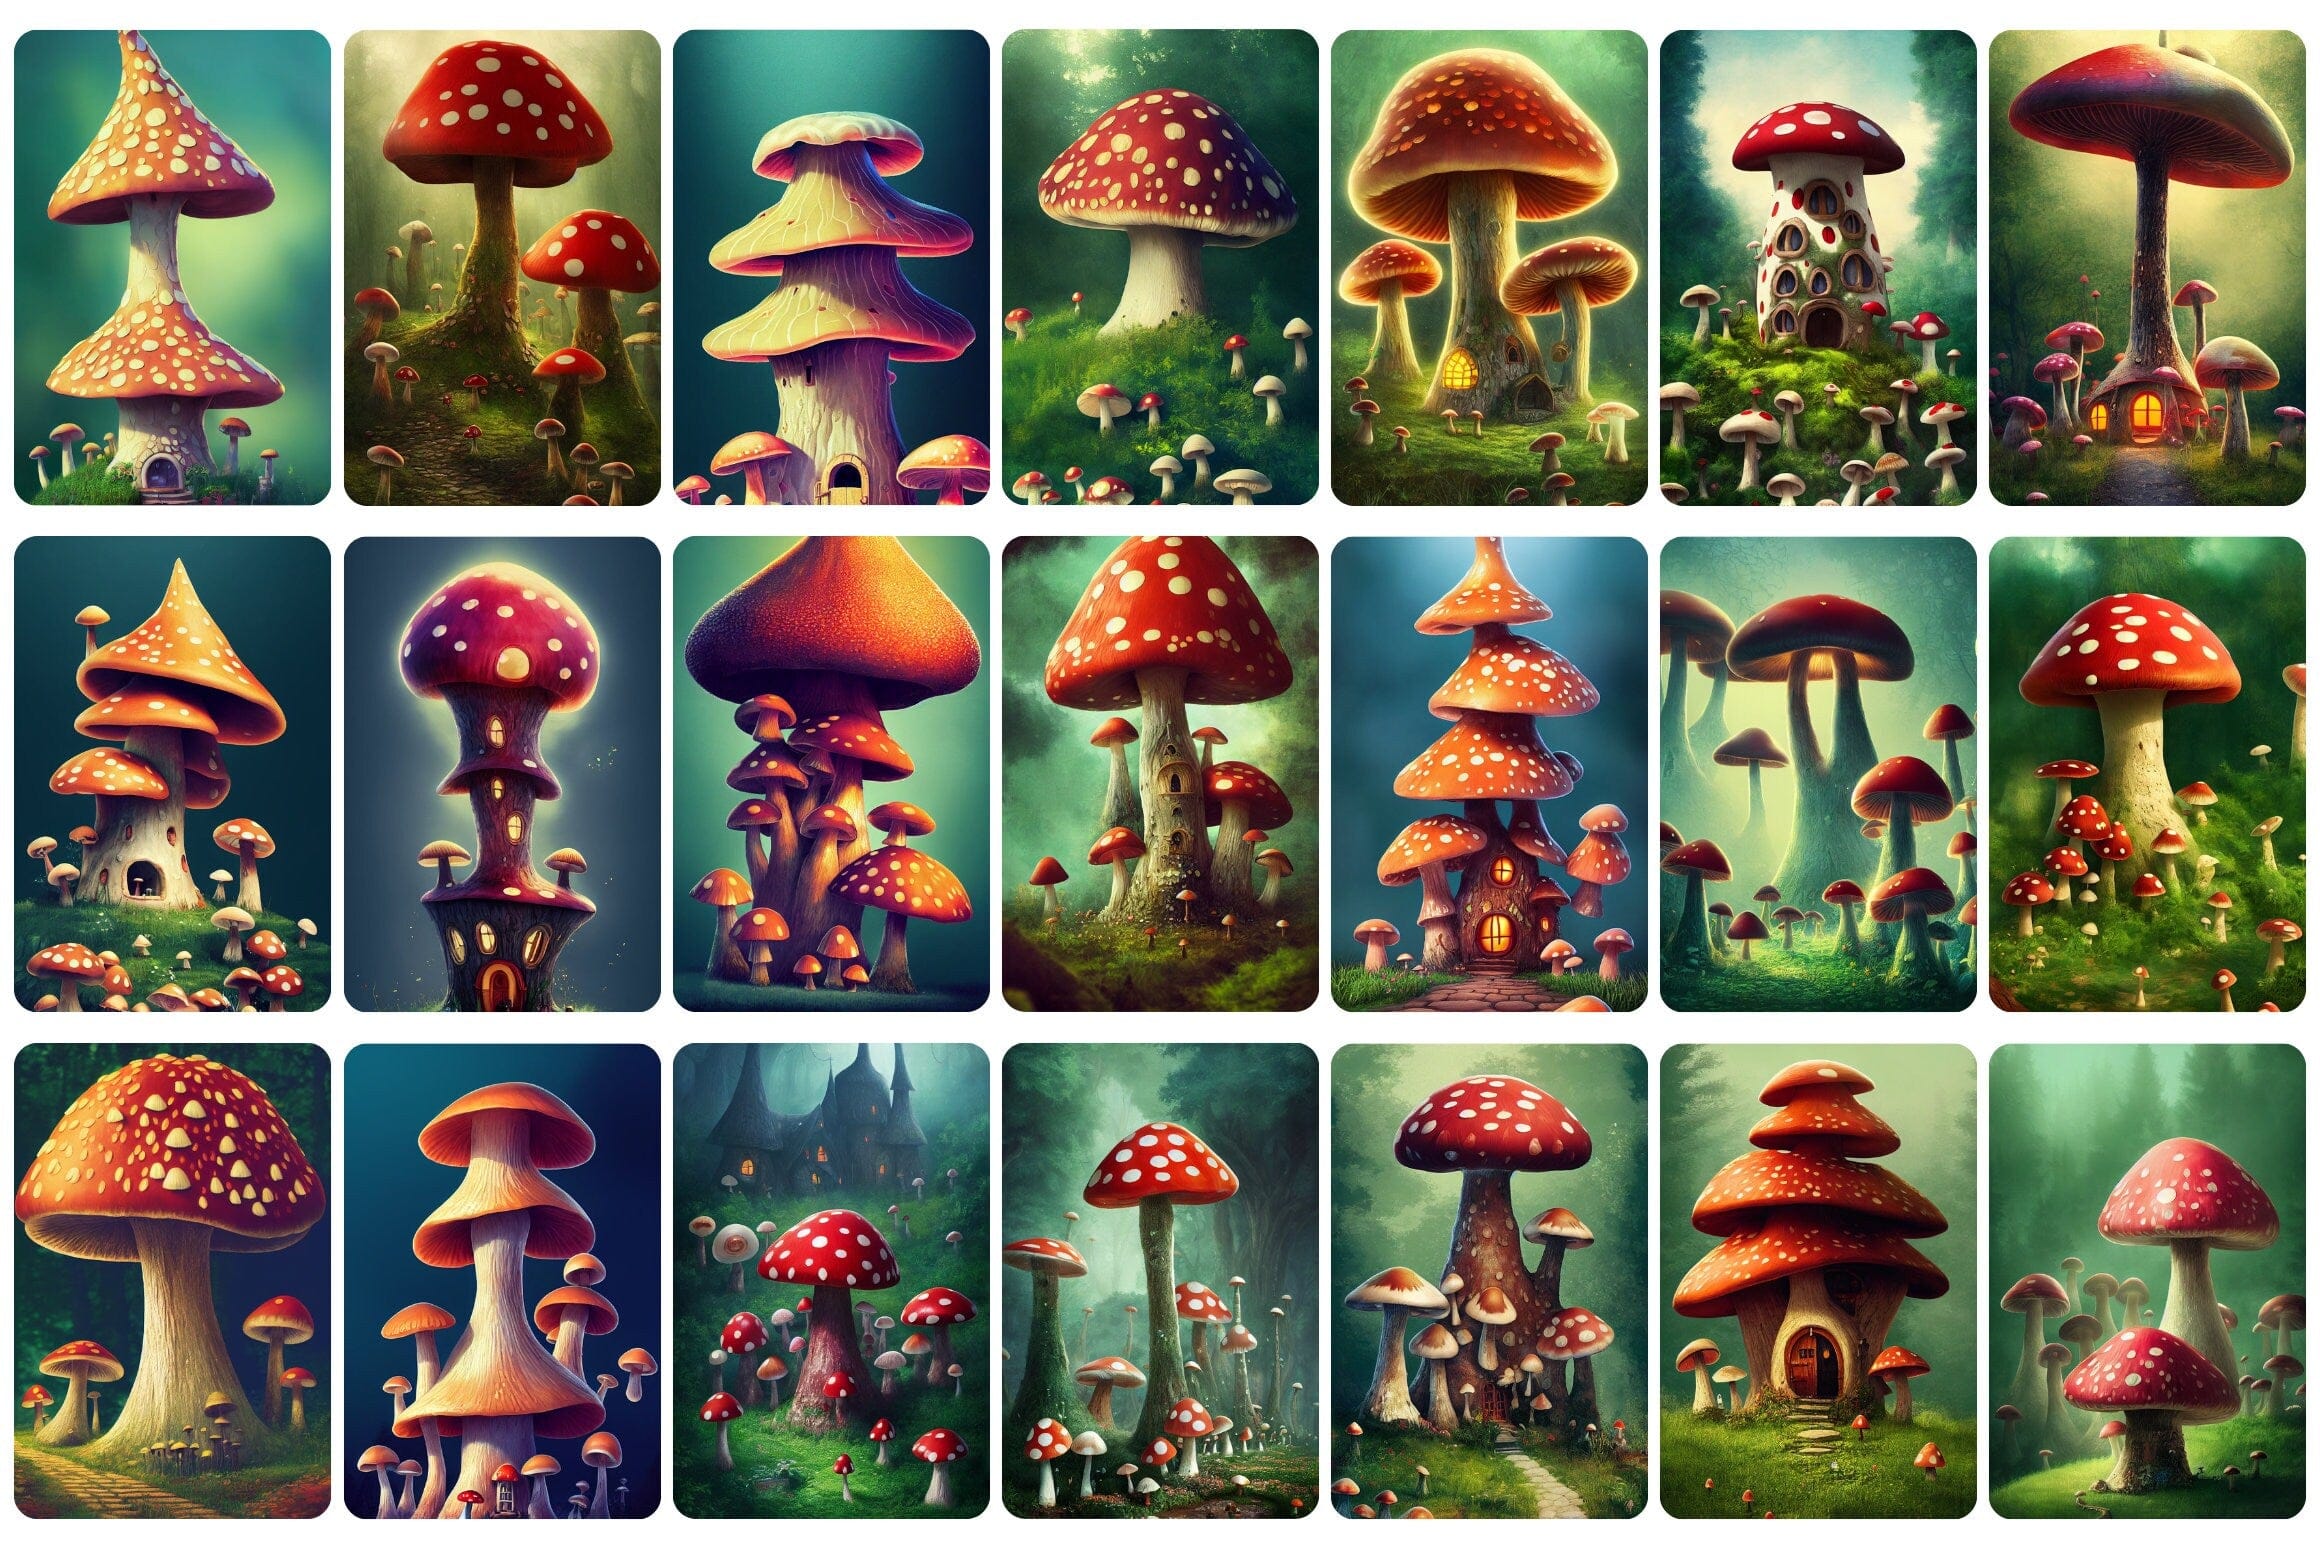 Printable wall art: 110+ Fantasy Magic Mushrooms in Wonderland, Wall Art Set, Digital Download Digital Download Sumobundle